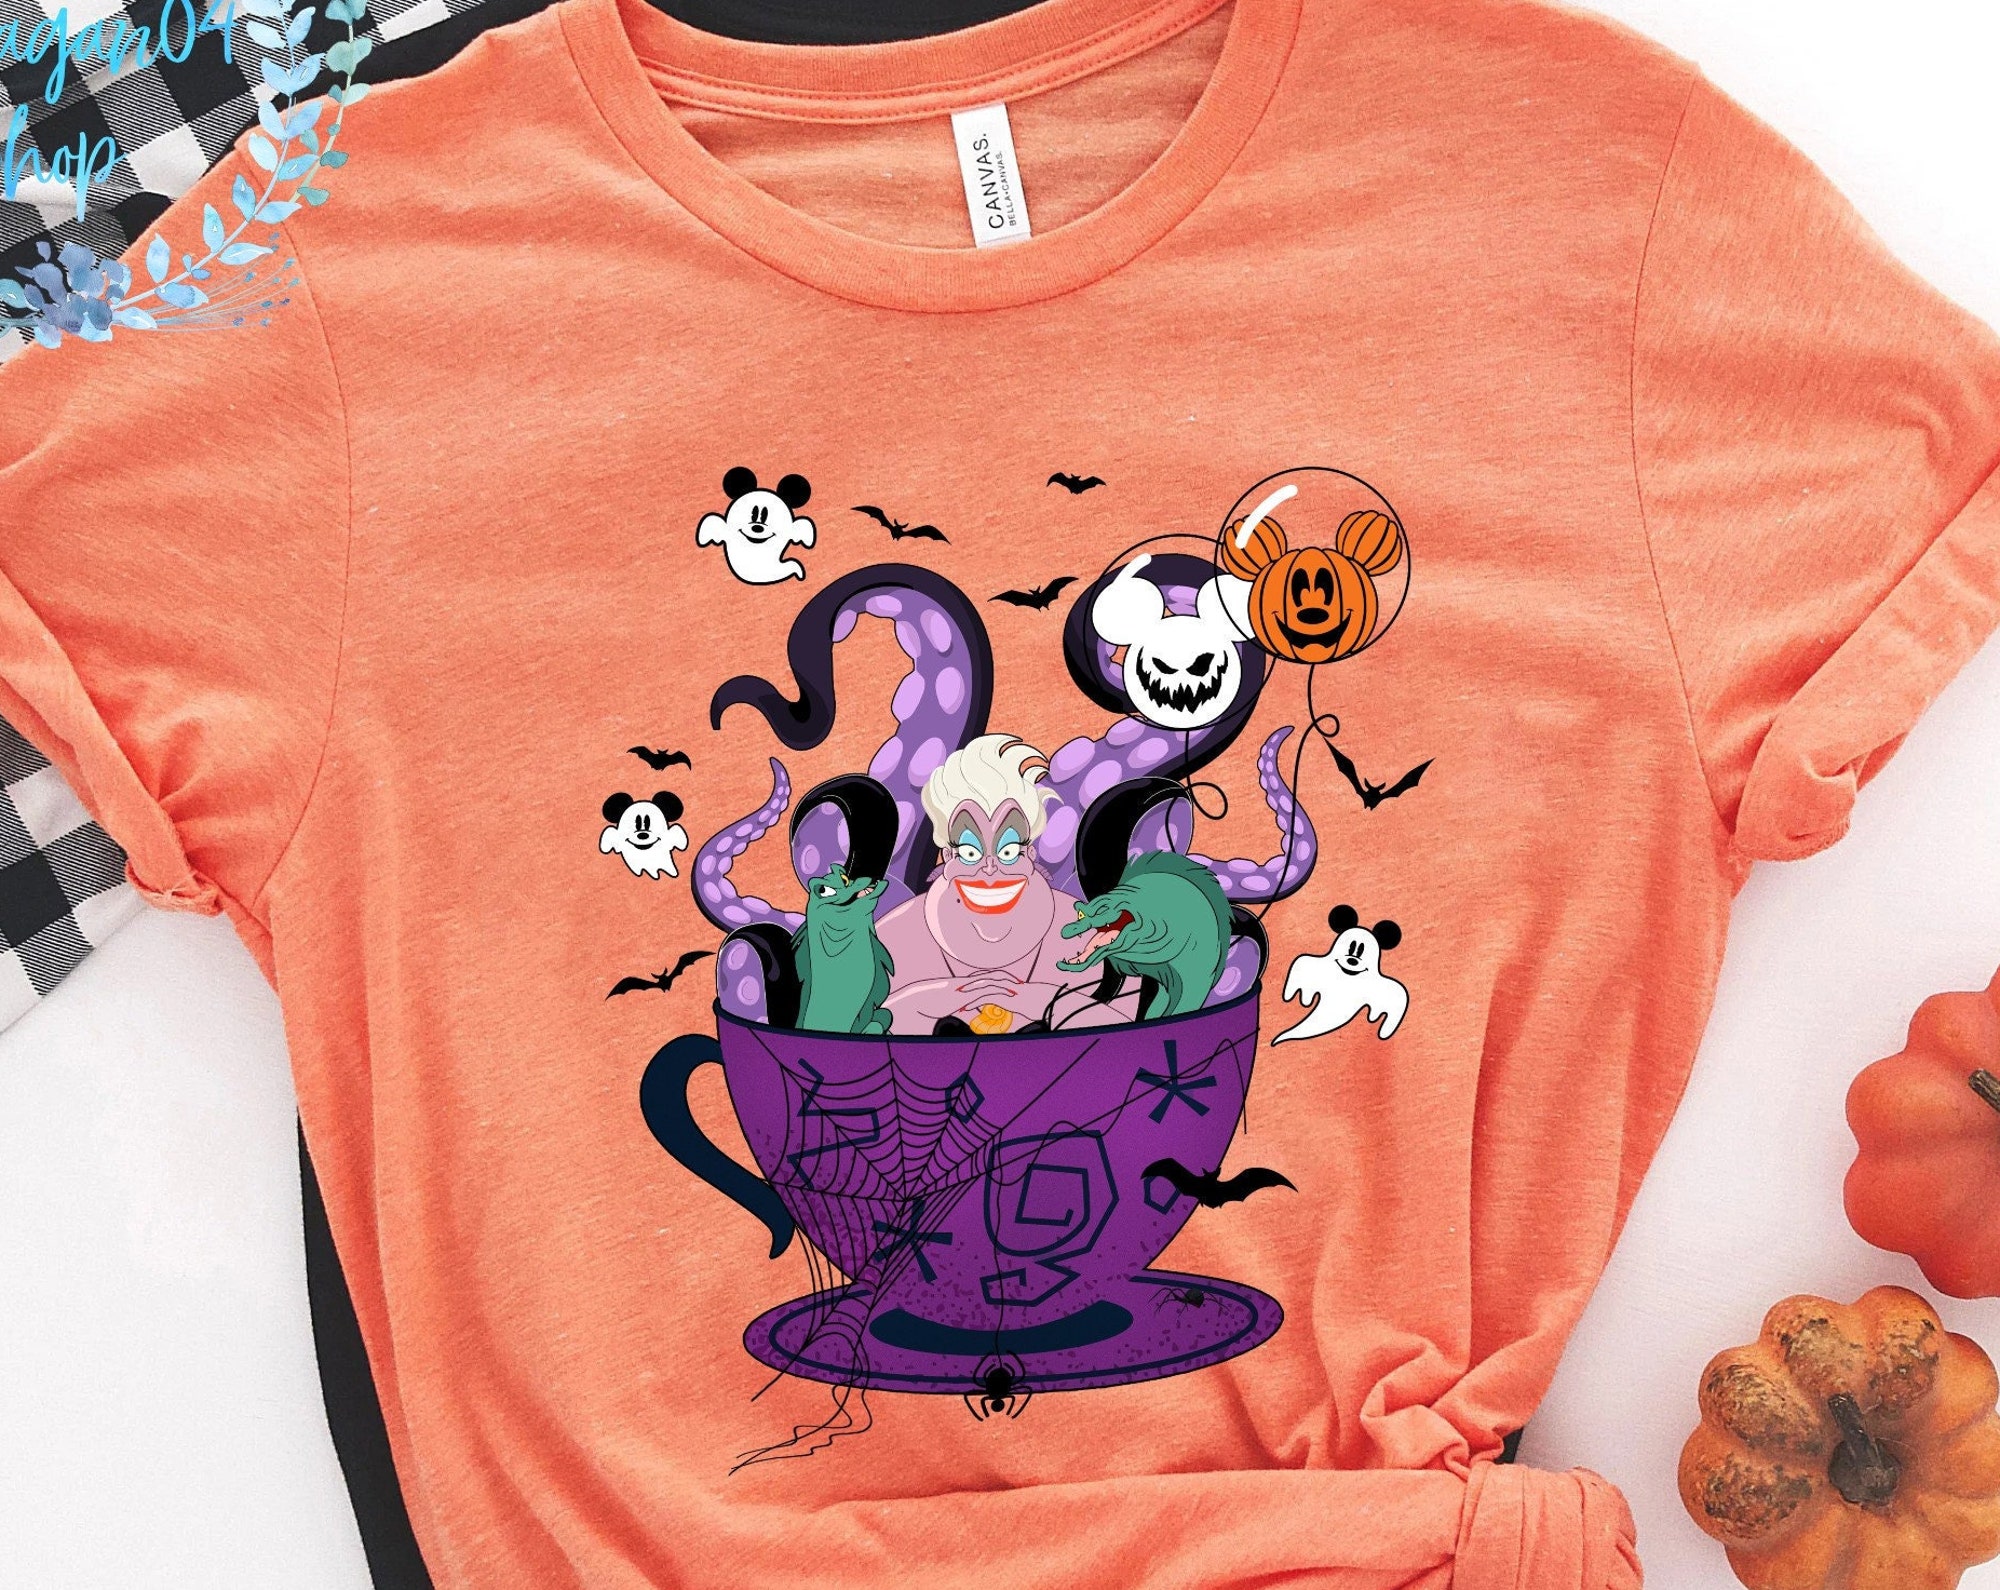 Discover Disney Halloween Shirt, Ursula Shirt, Villain Sea Queen, Disney Villain Shirt, Flotsam and Jetsam Disney shirt, Disney Trip Shirt, DL-010903